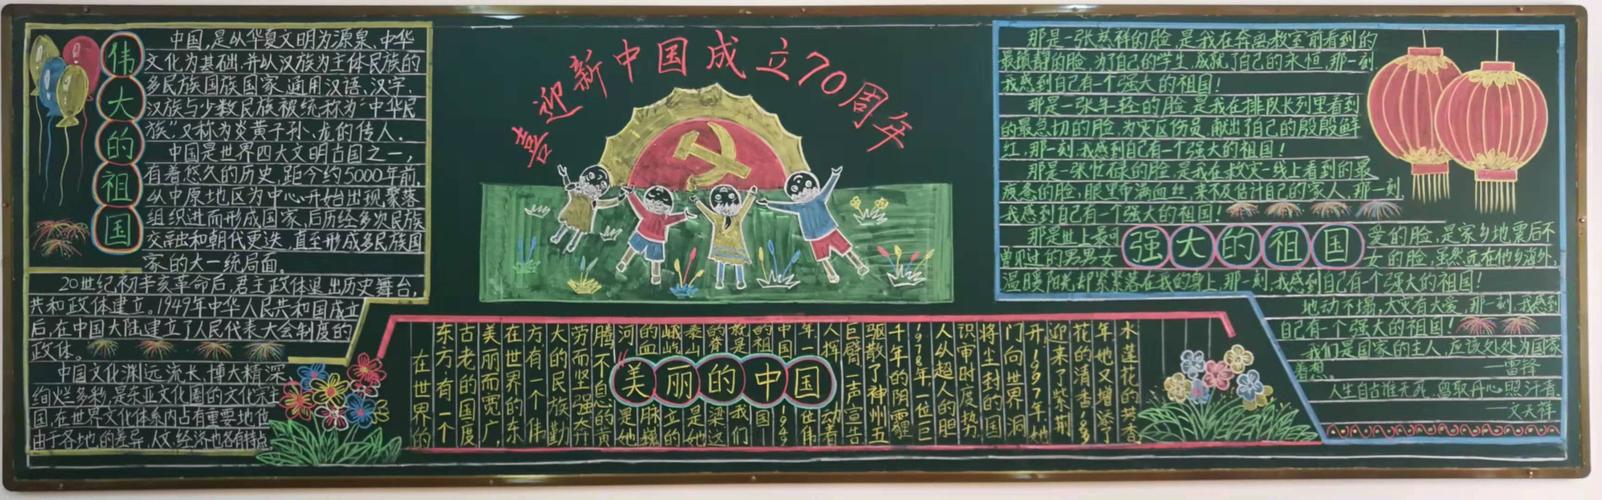 湖光中心小学庆祝新中国成立 70 周年少先队主题黑板报展示